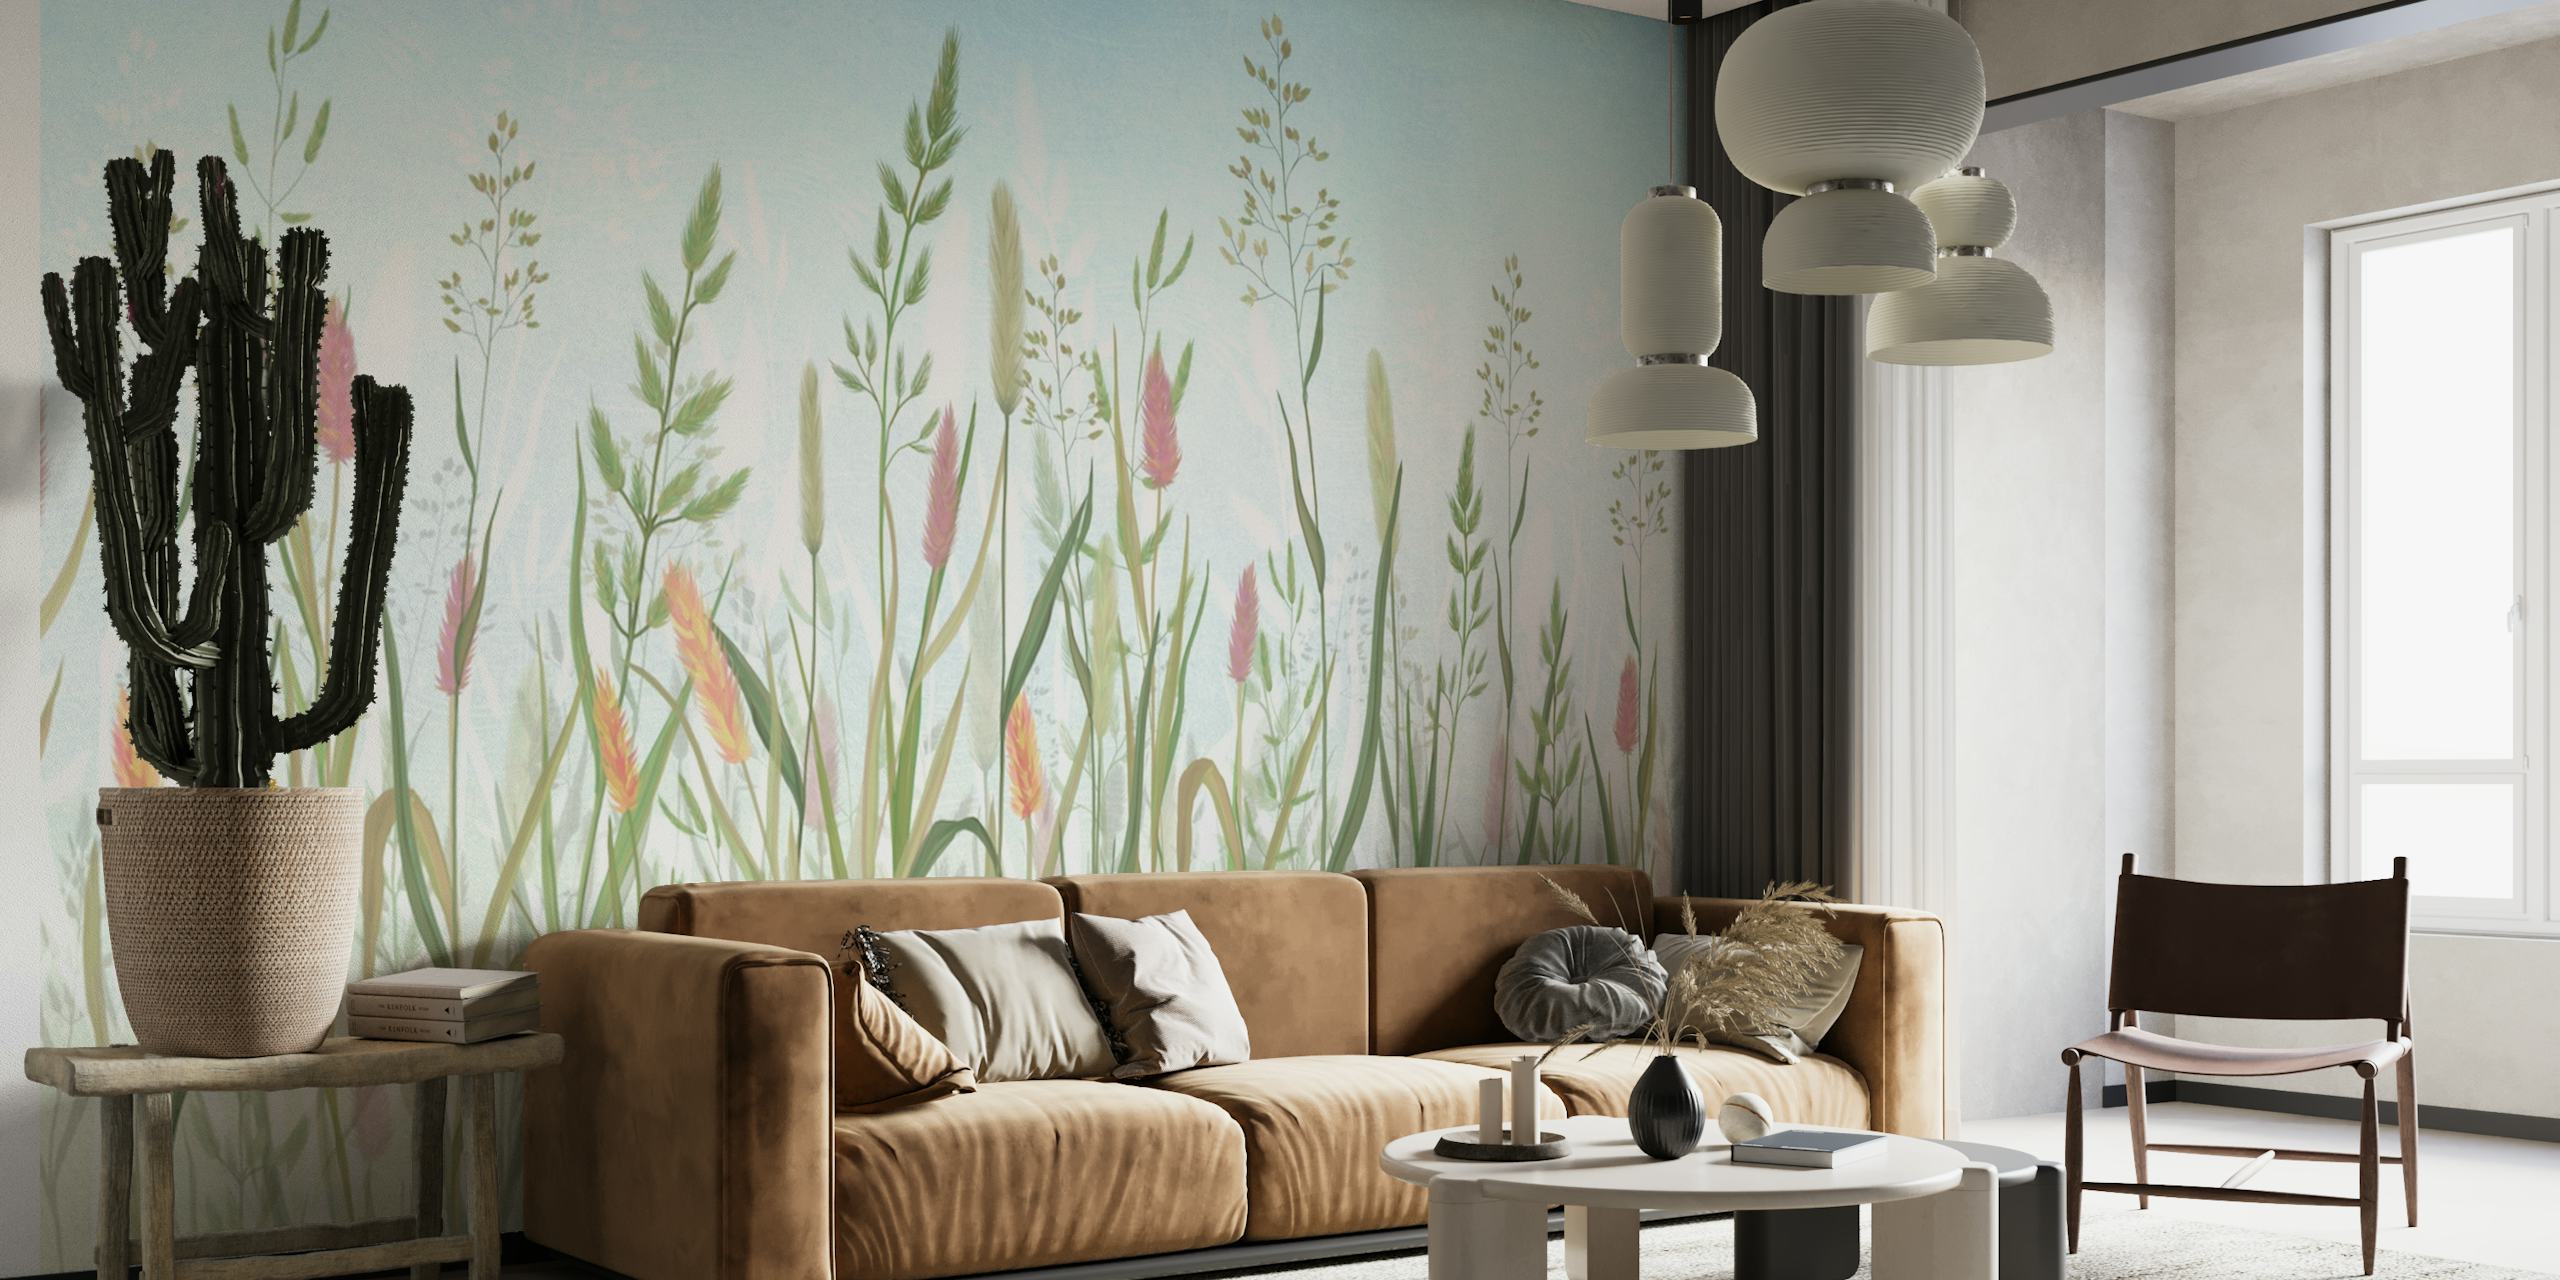 Fototapeta v pastelových barvách s luční trávou a poklidným designem divokých květin